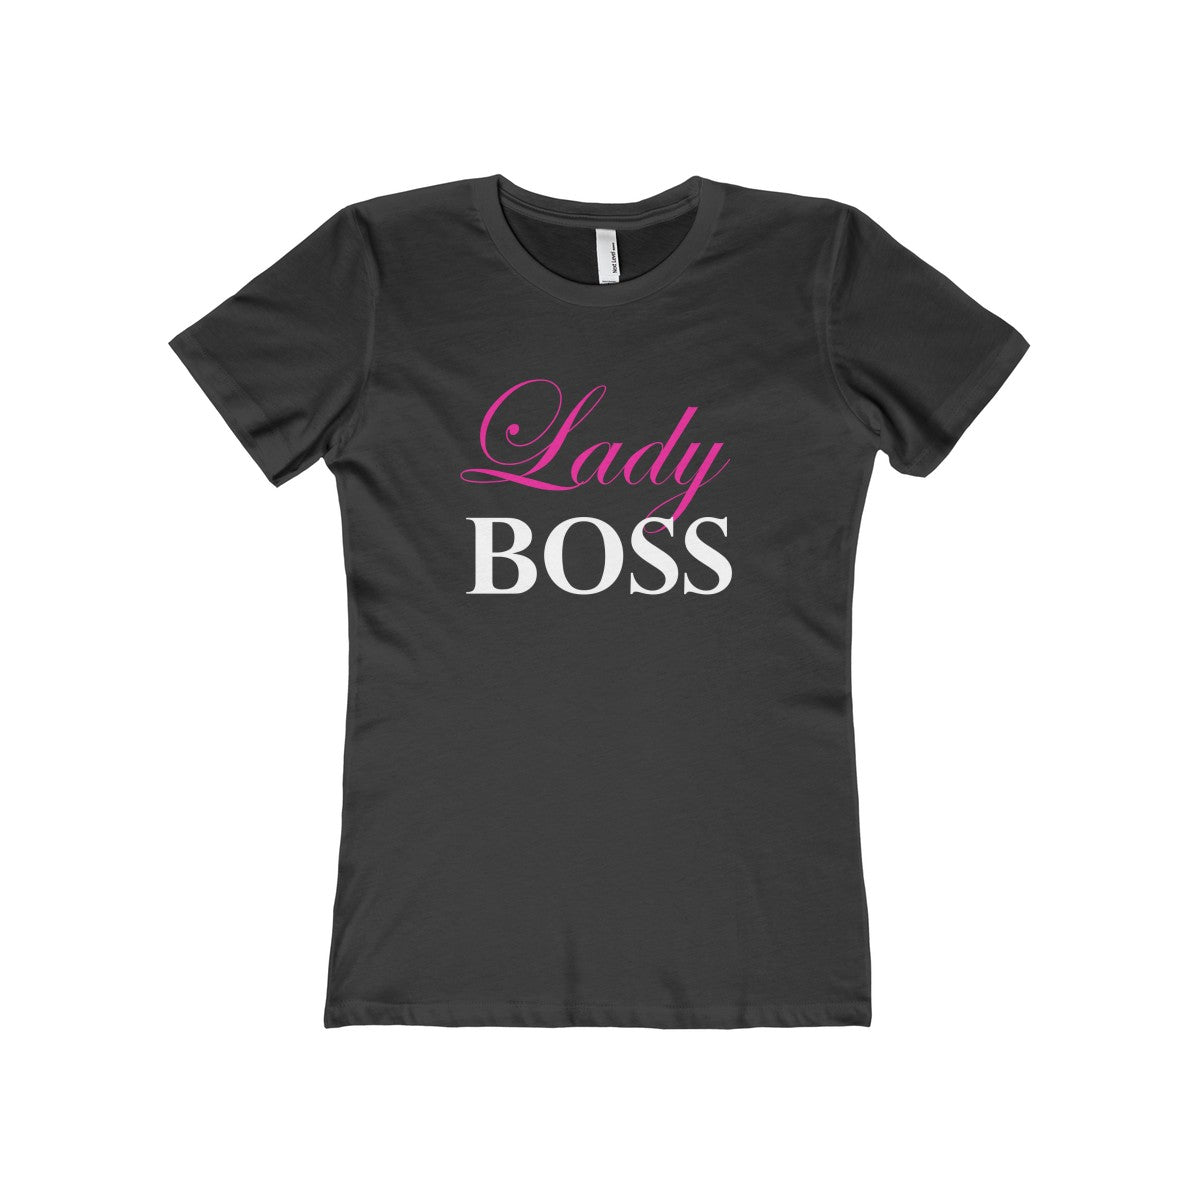 "LADY BOSS" Slim Fitting 100% Cotton T-Shirt - FabulousLife